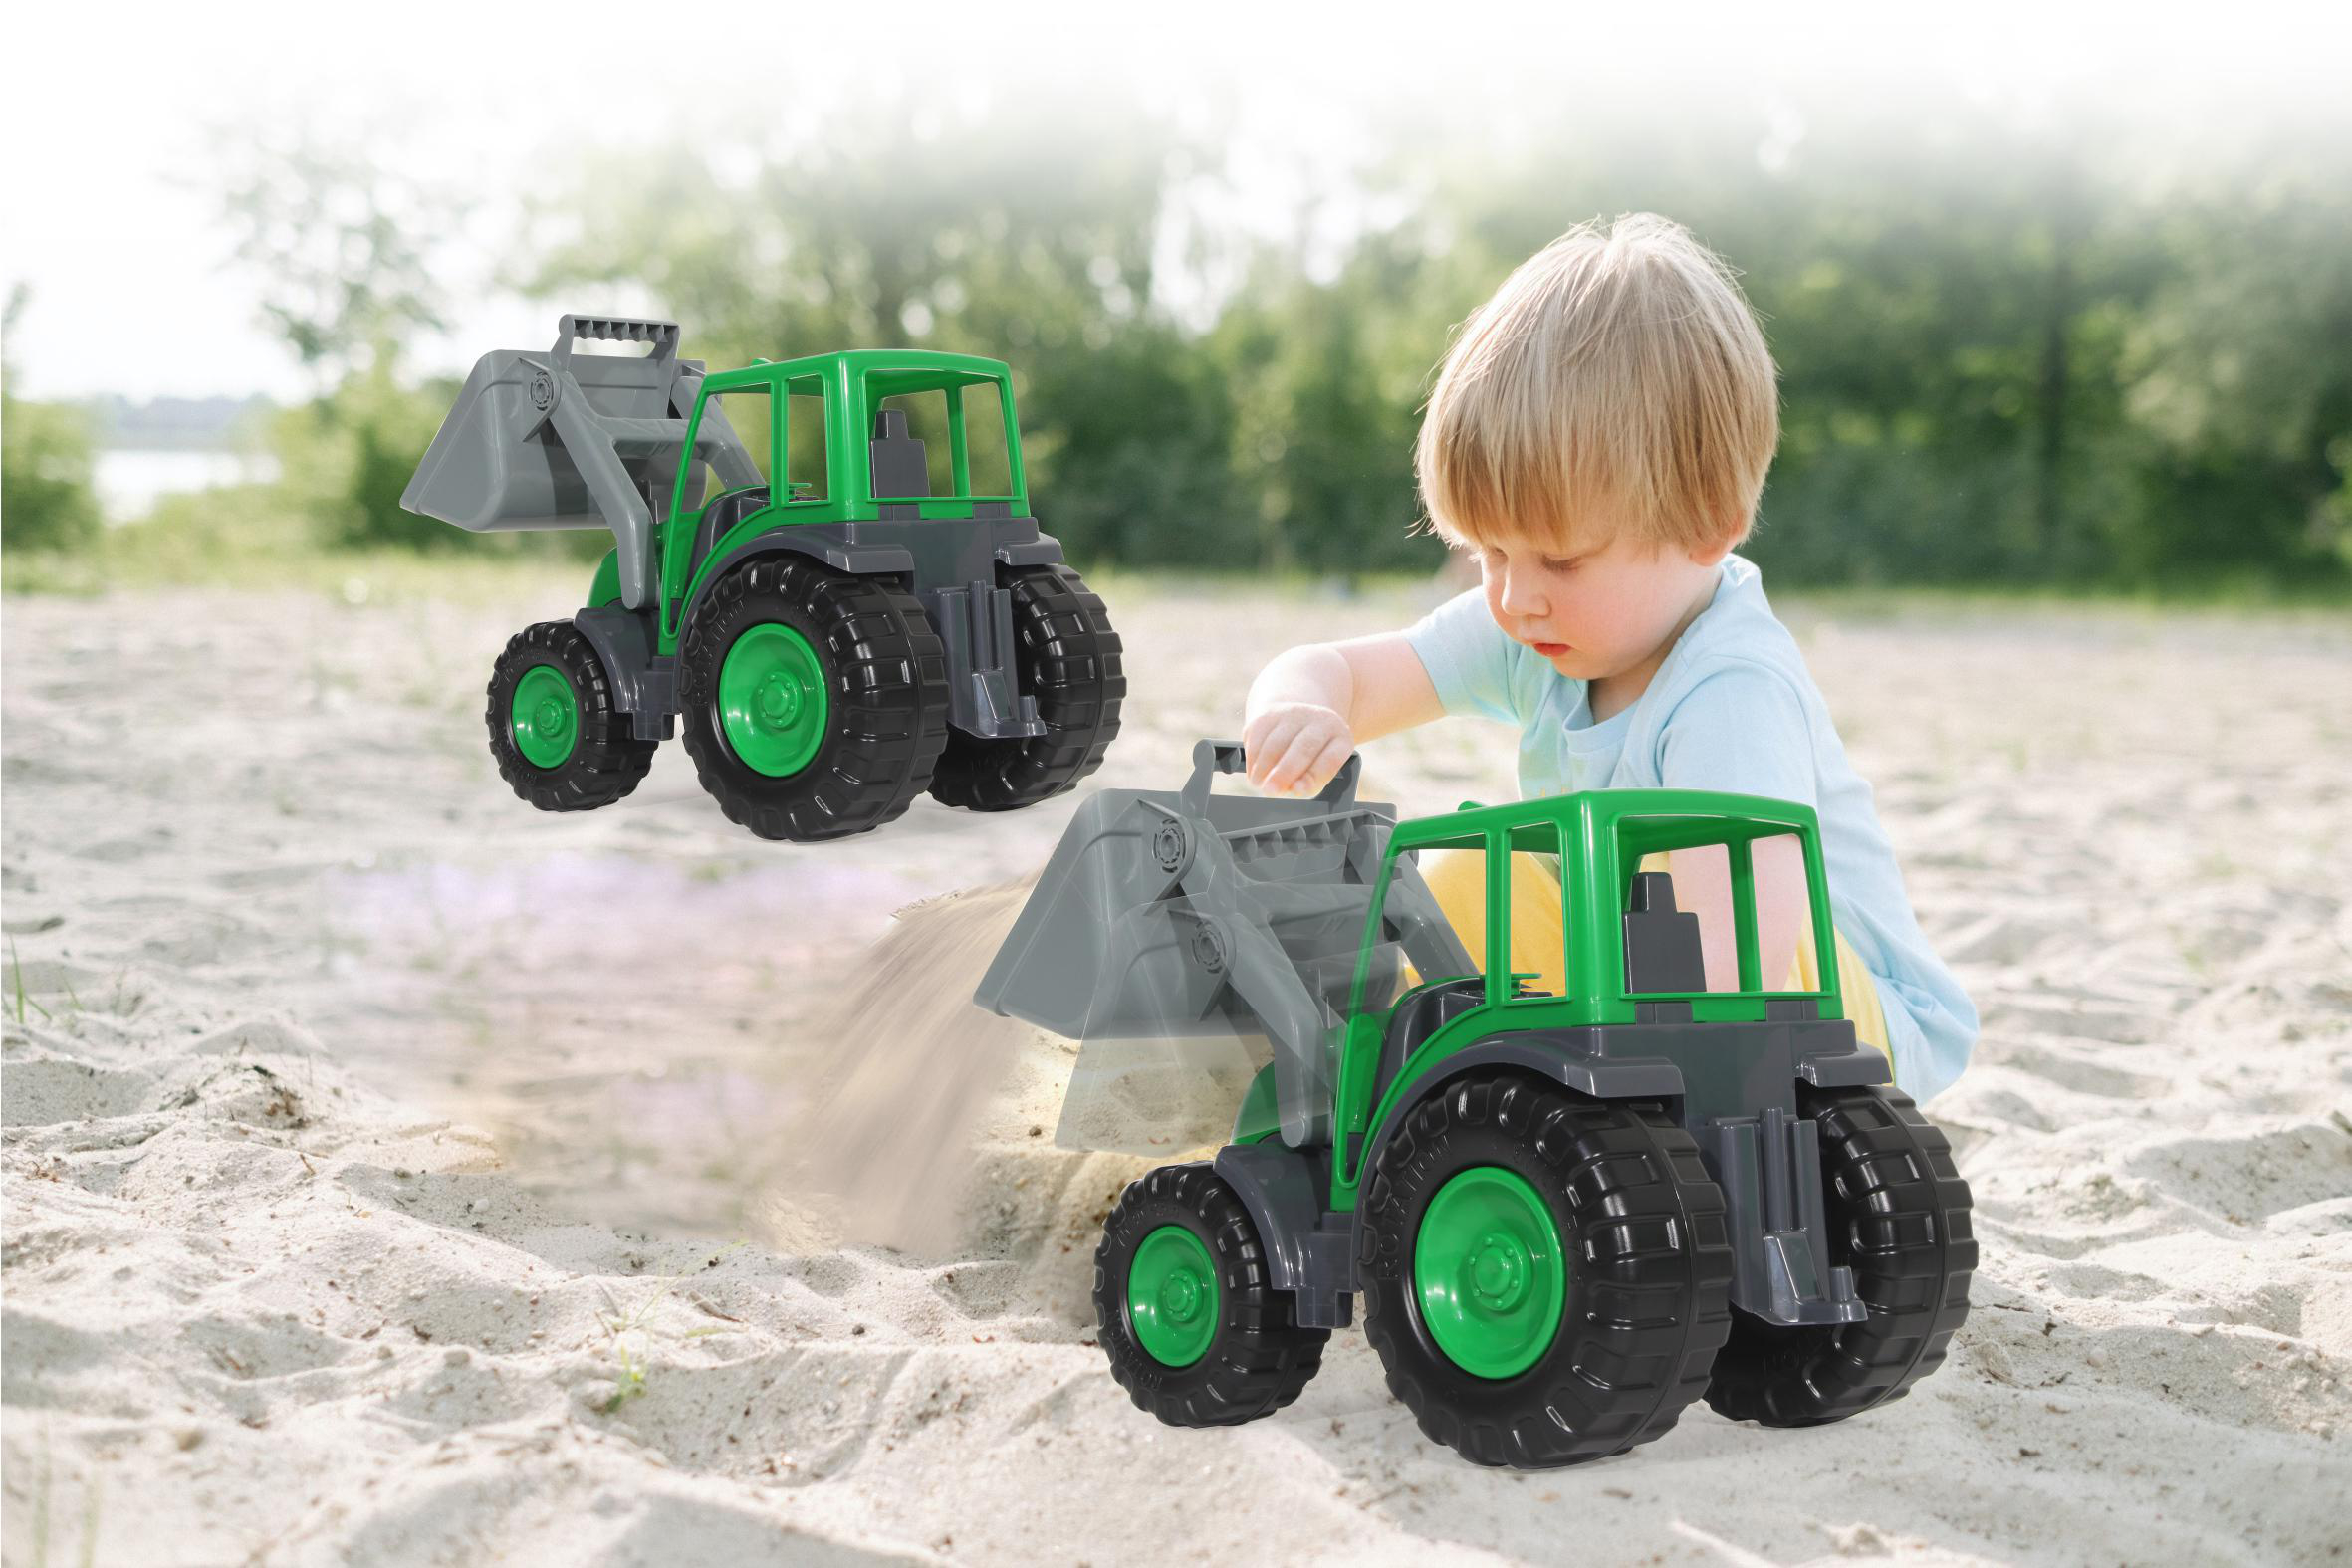 Spielzeugfahrzeug JAMARA XL Power Loader Frontlader Traktor mit Grün